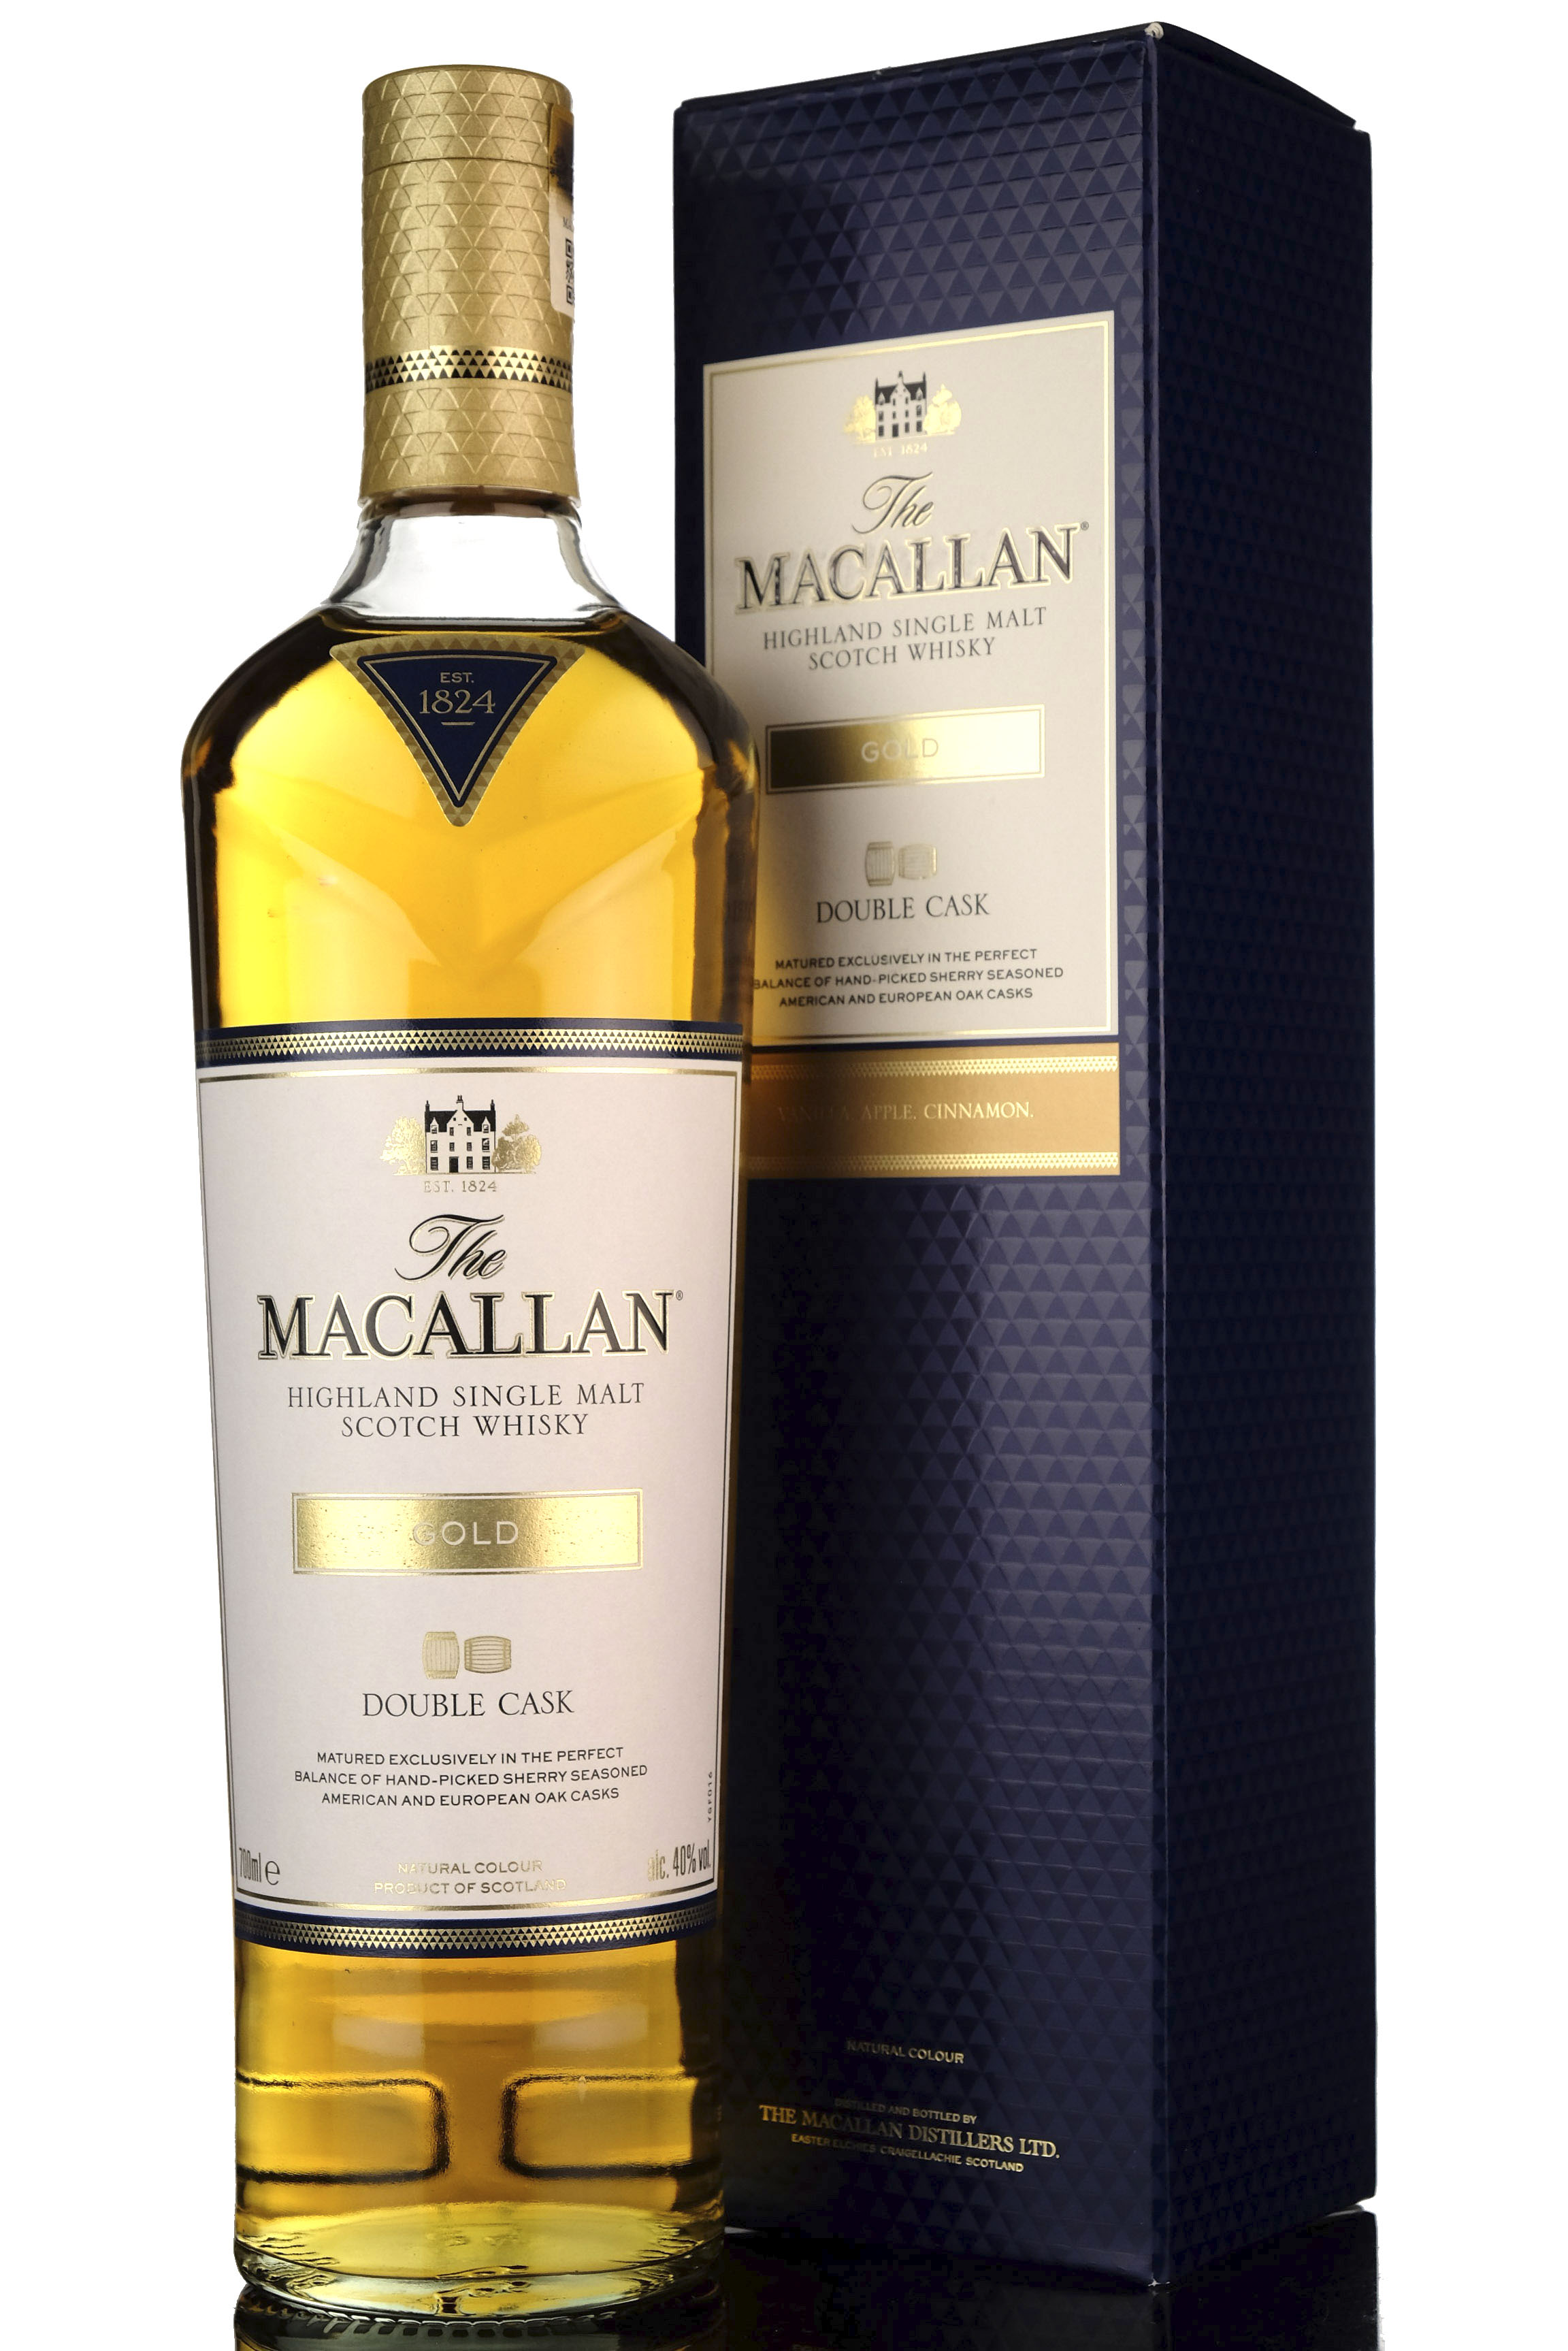 Macallan Gold - Double Cask